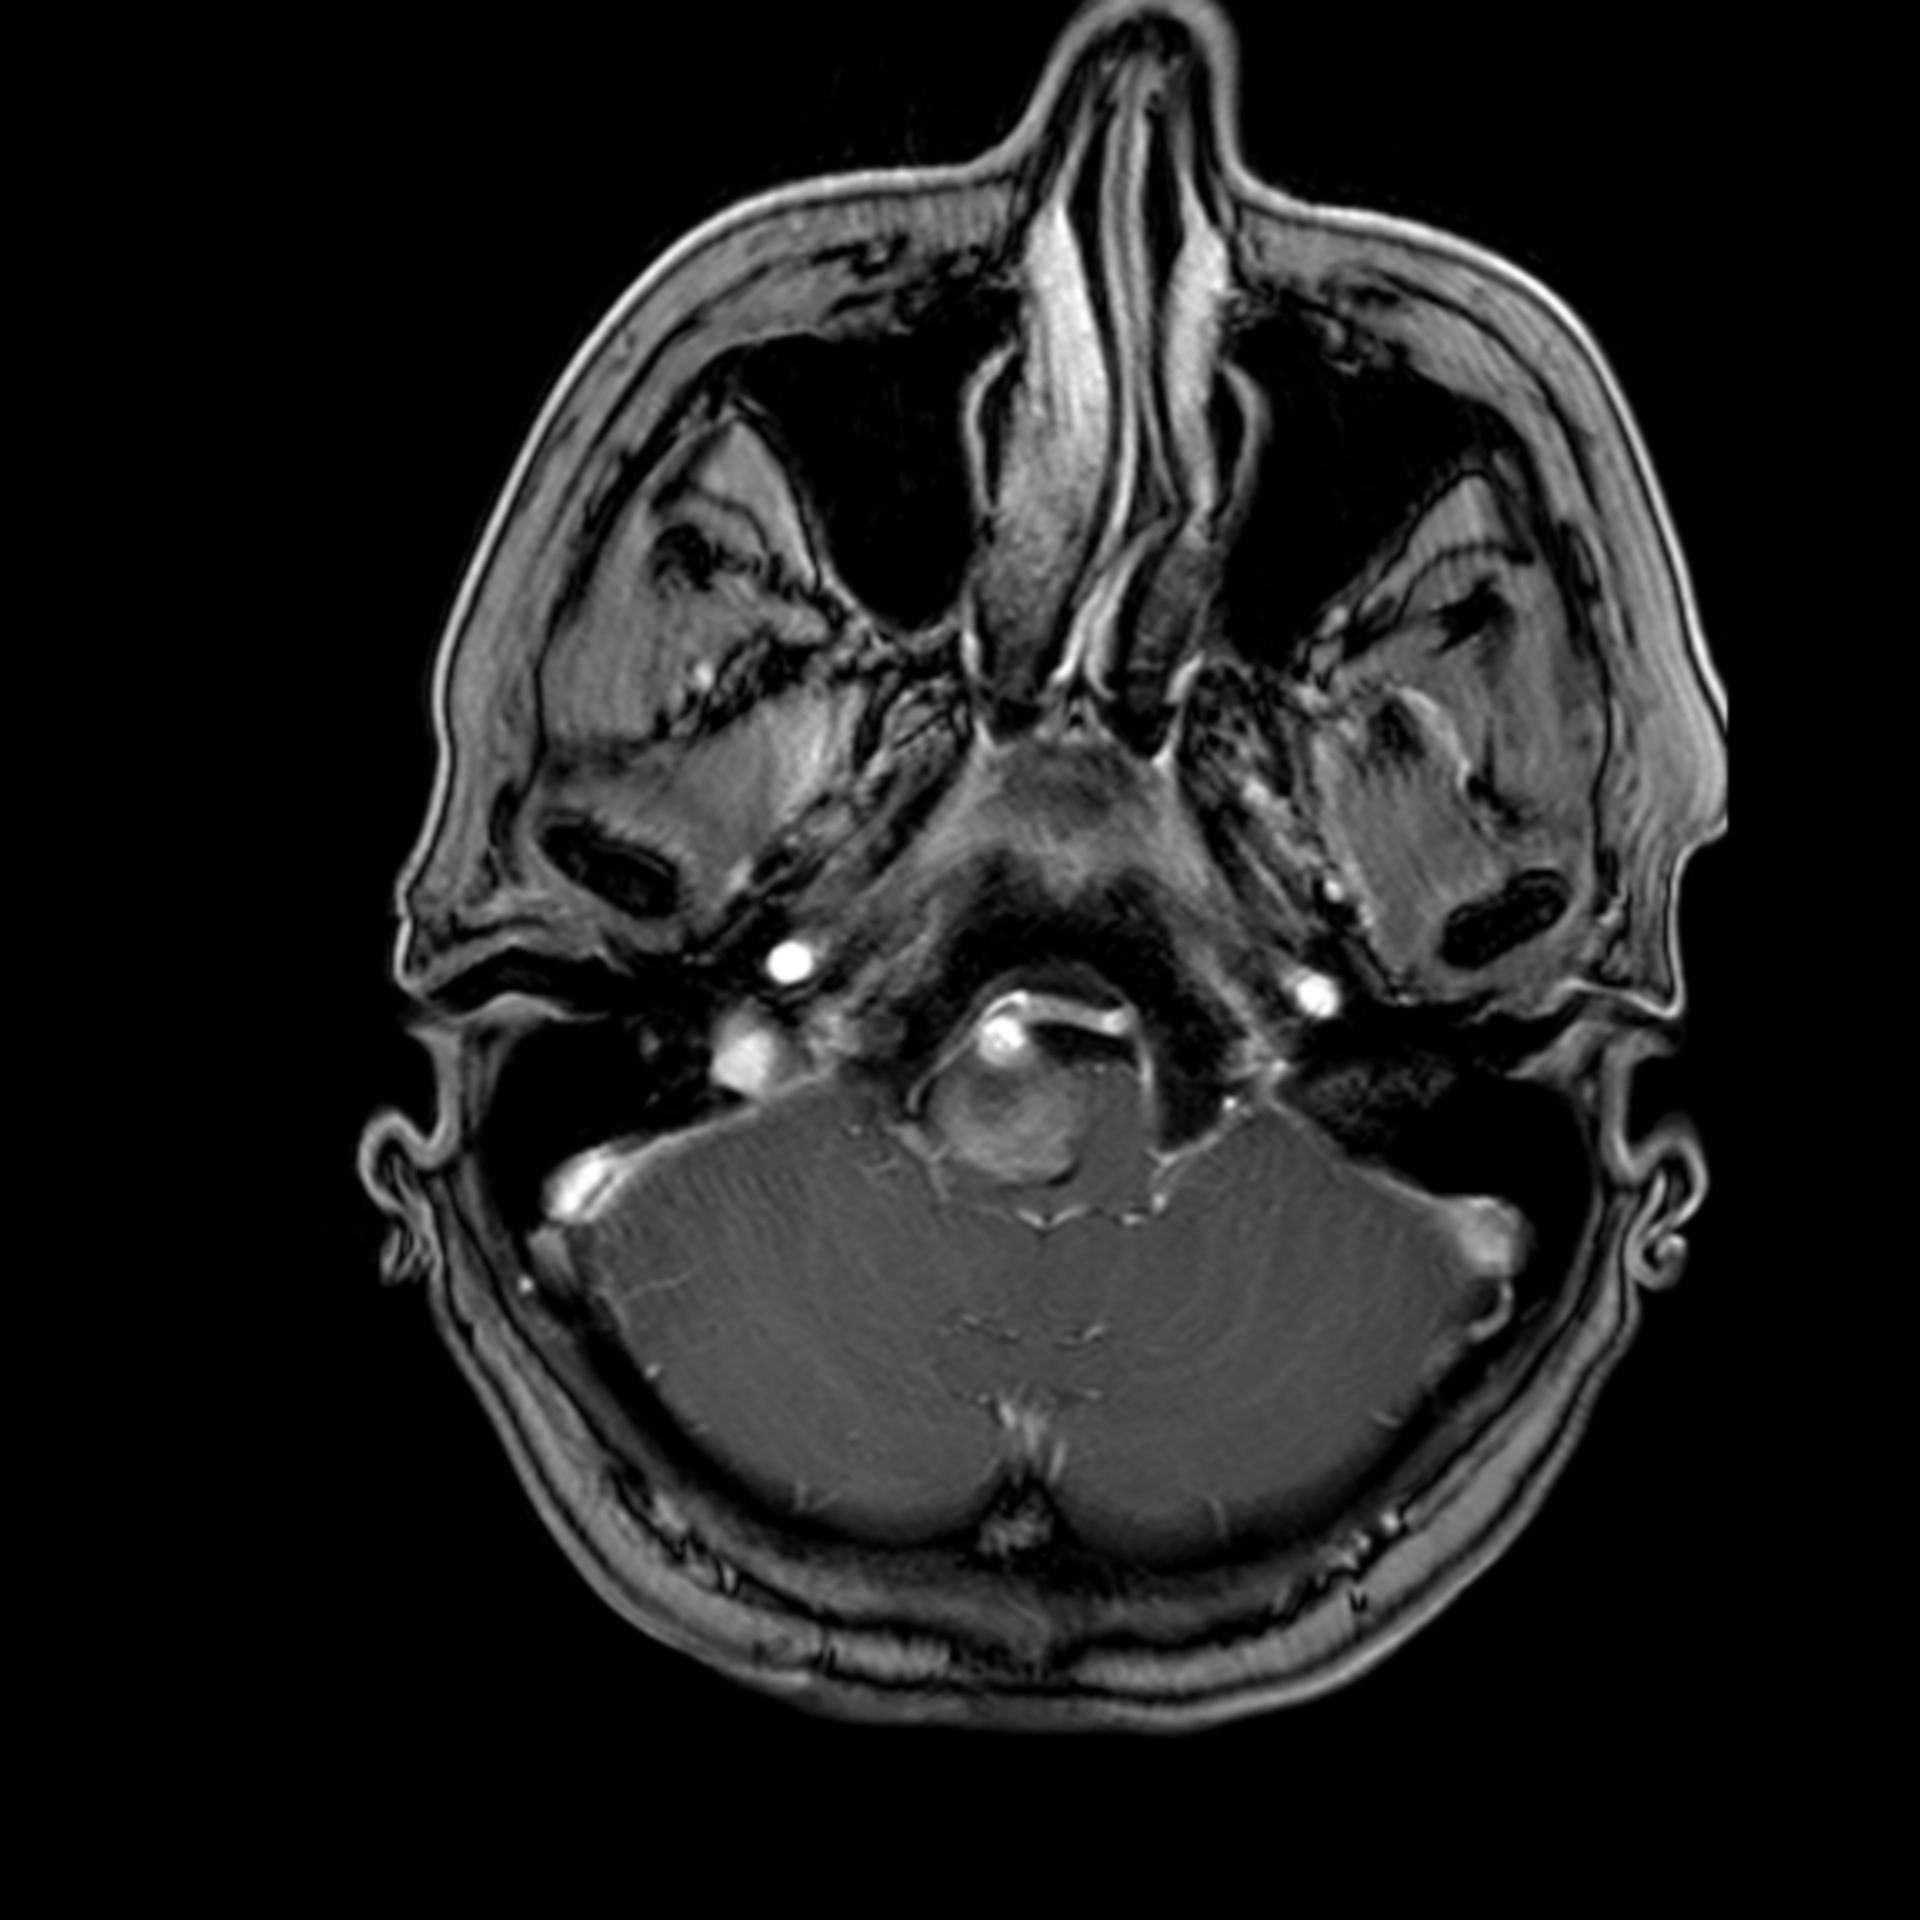 Riesenaneurysma der A. vertebralis (t1_km_tra00001)